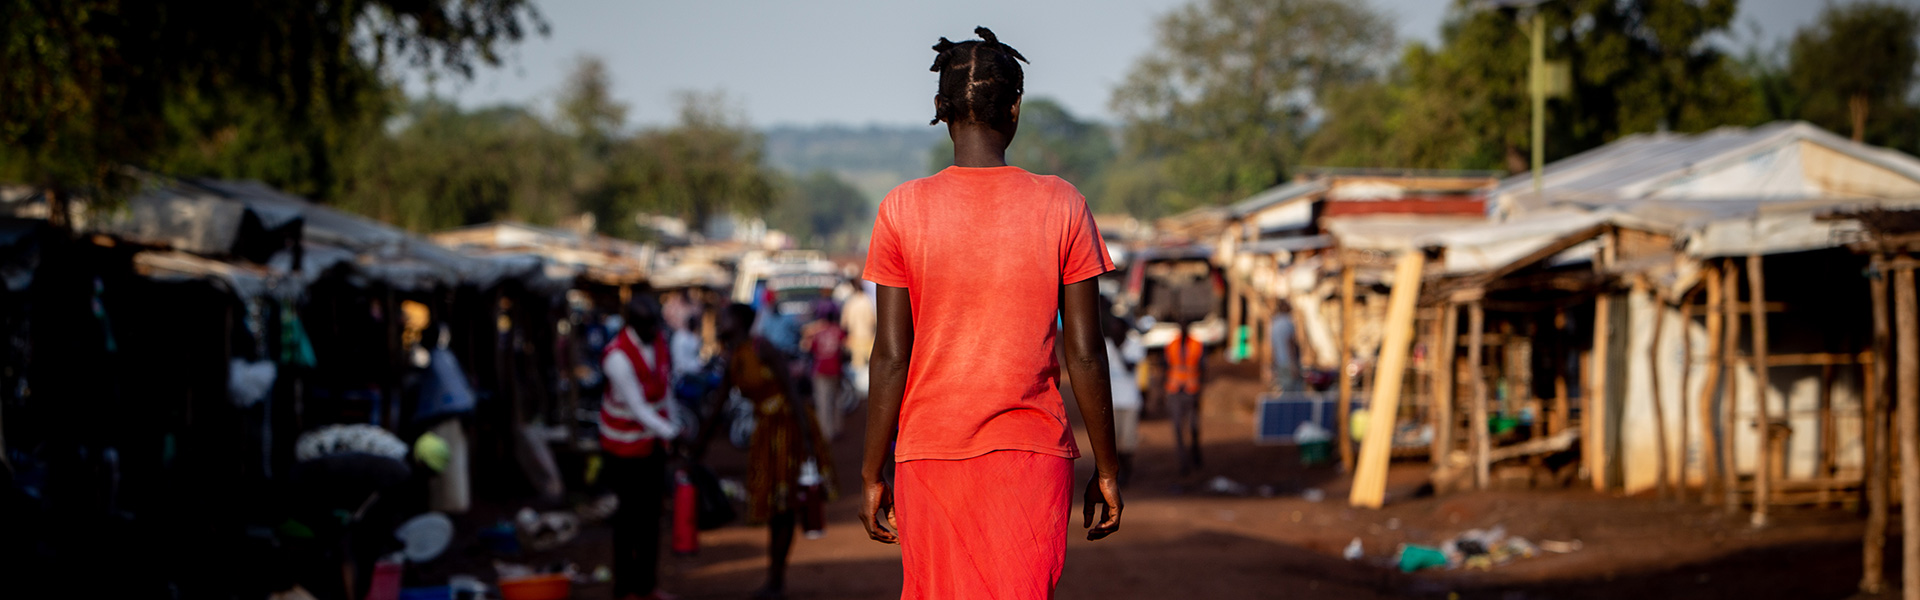 south-sudan-uganda-refugee-camp-woman-walking